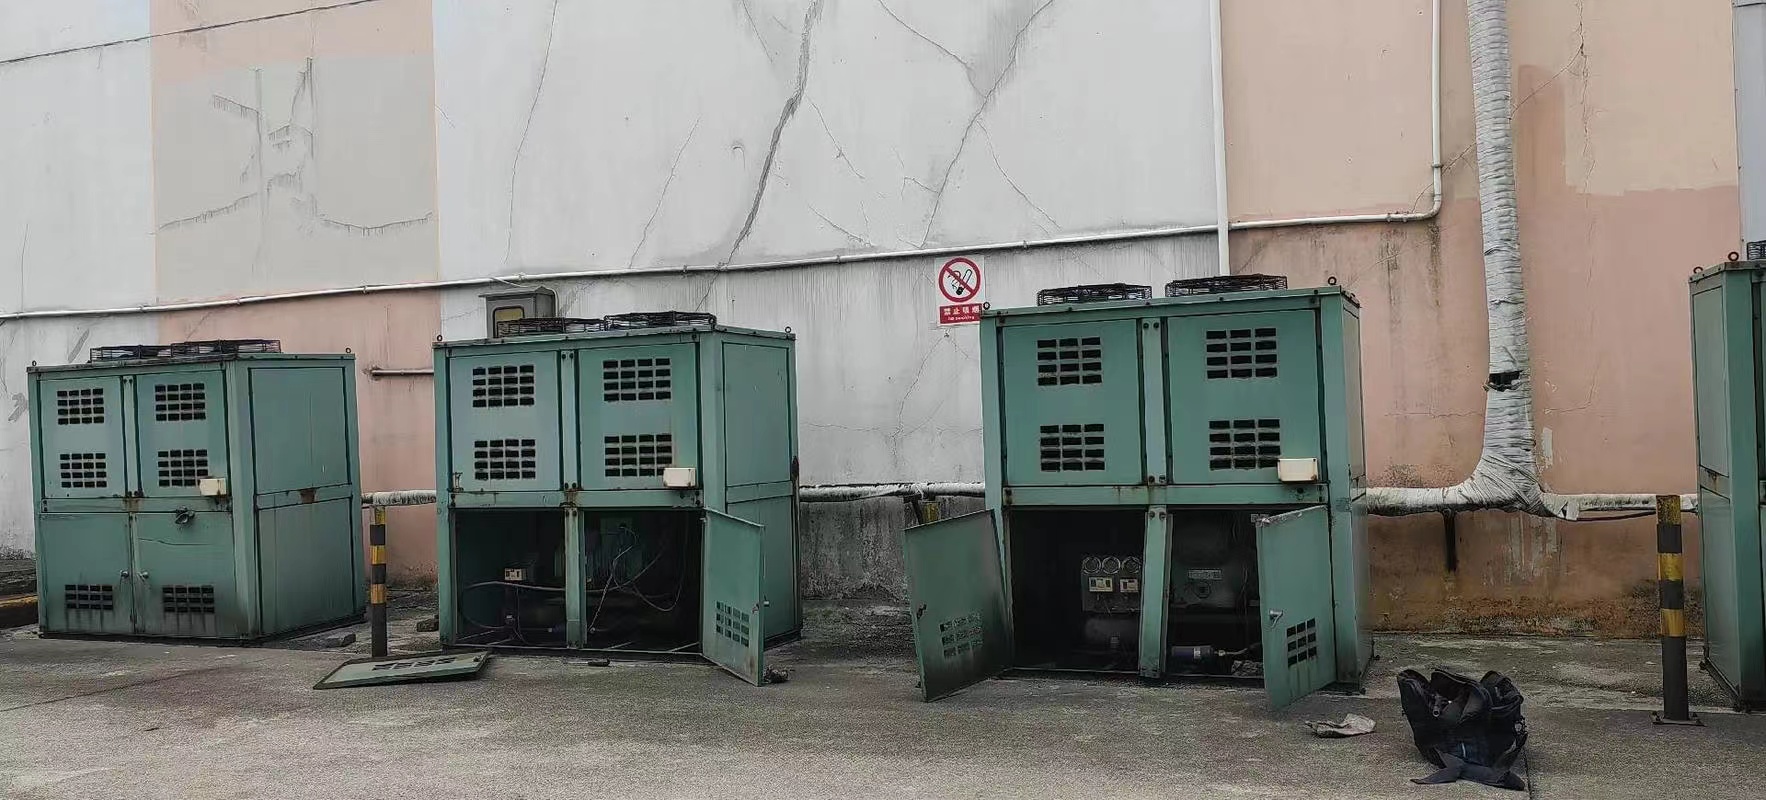 雅安雨城区彩钢瓦拆除回收工业锅炉设备拆除